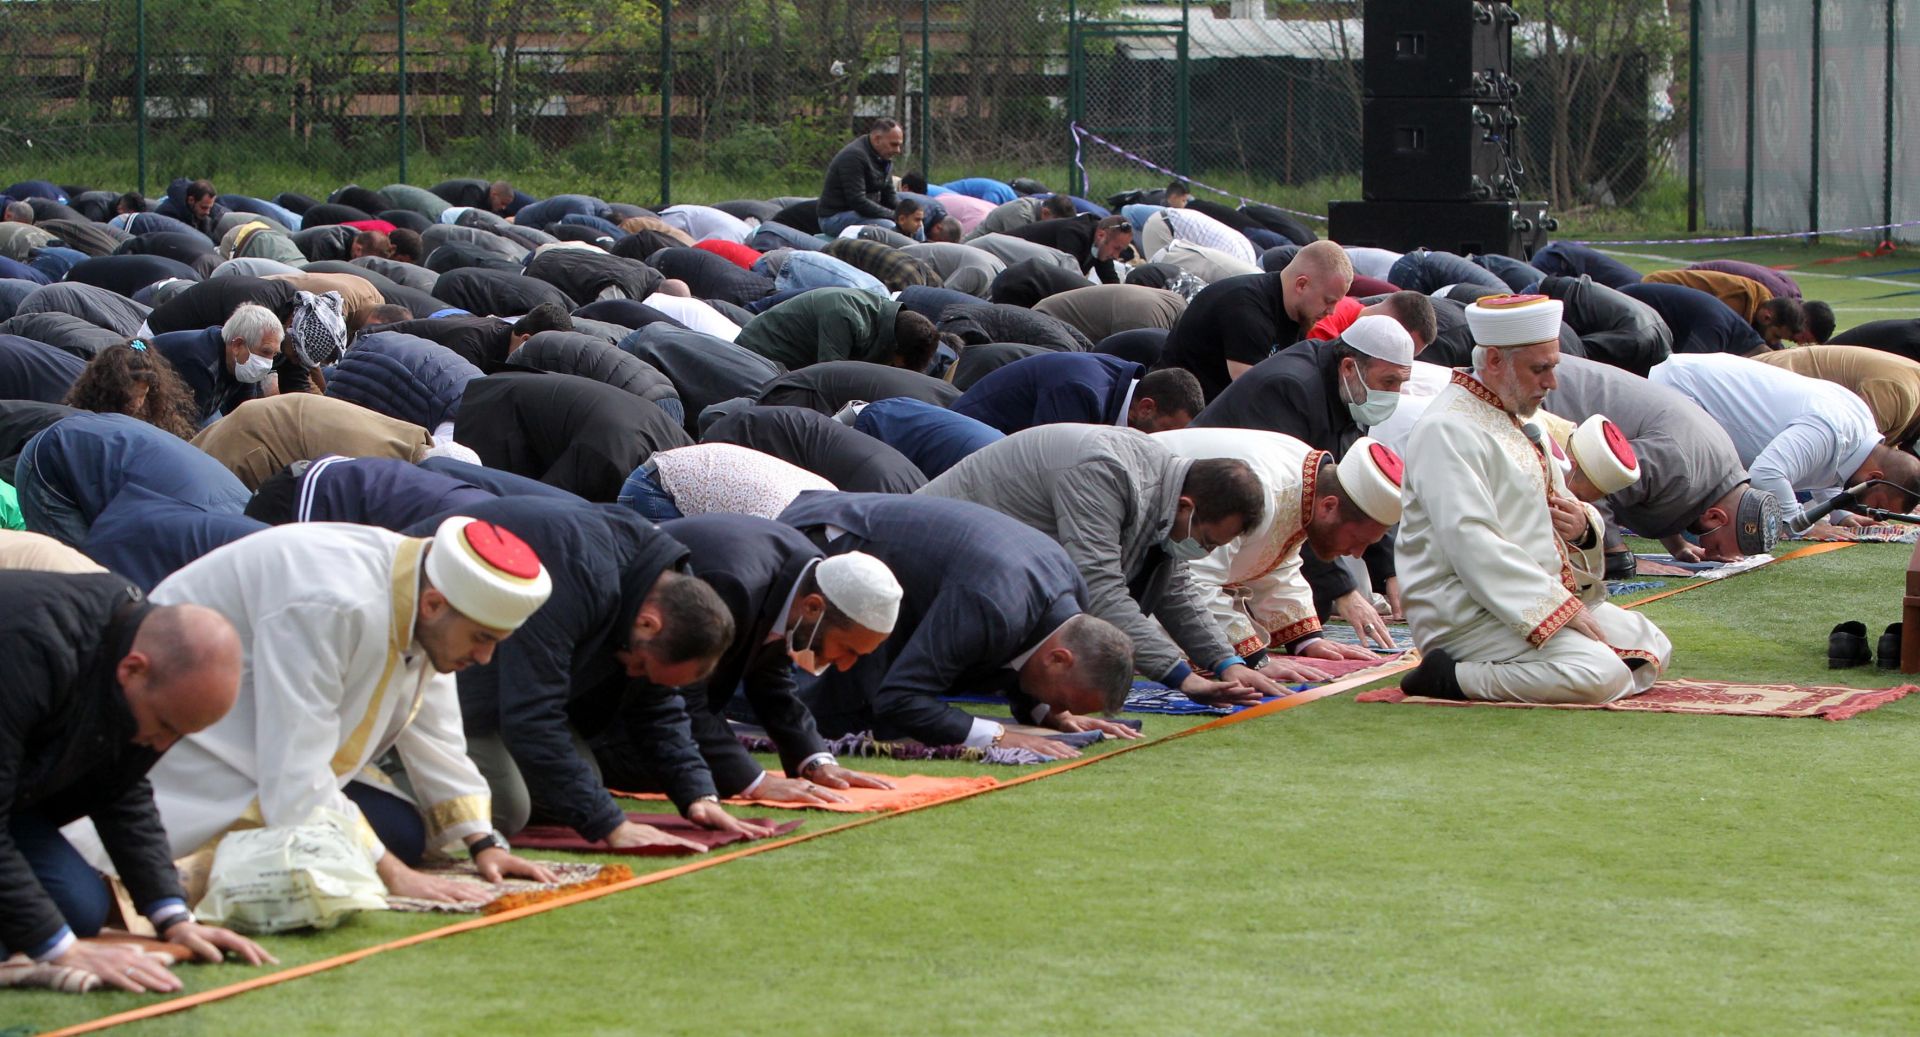 Хасковските мюсюлмани посрещнаха с молитви Рамазан Байрама на стадиона в крайградския парк "Ямача"